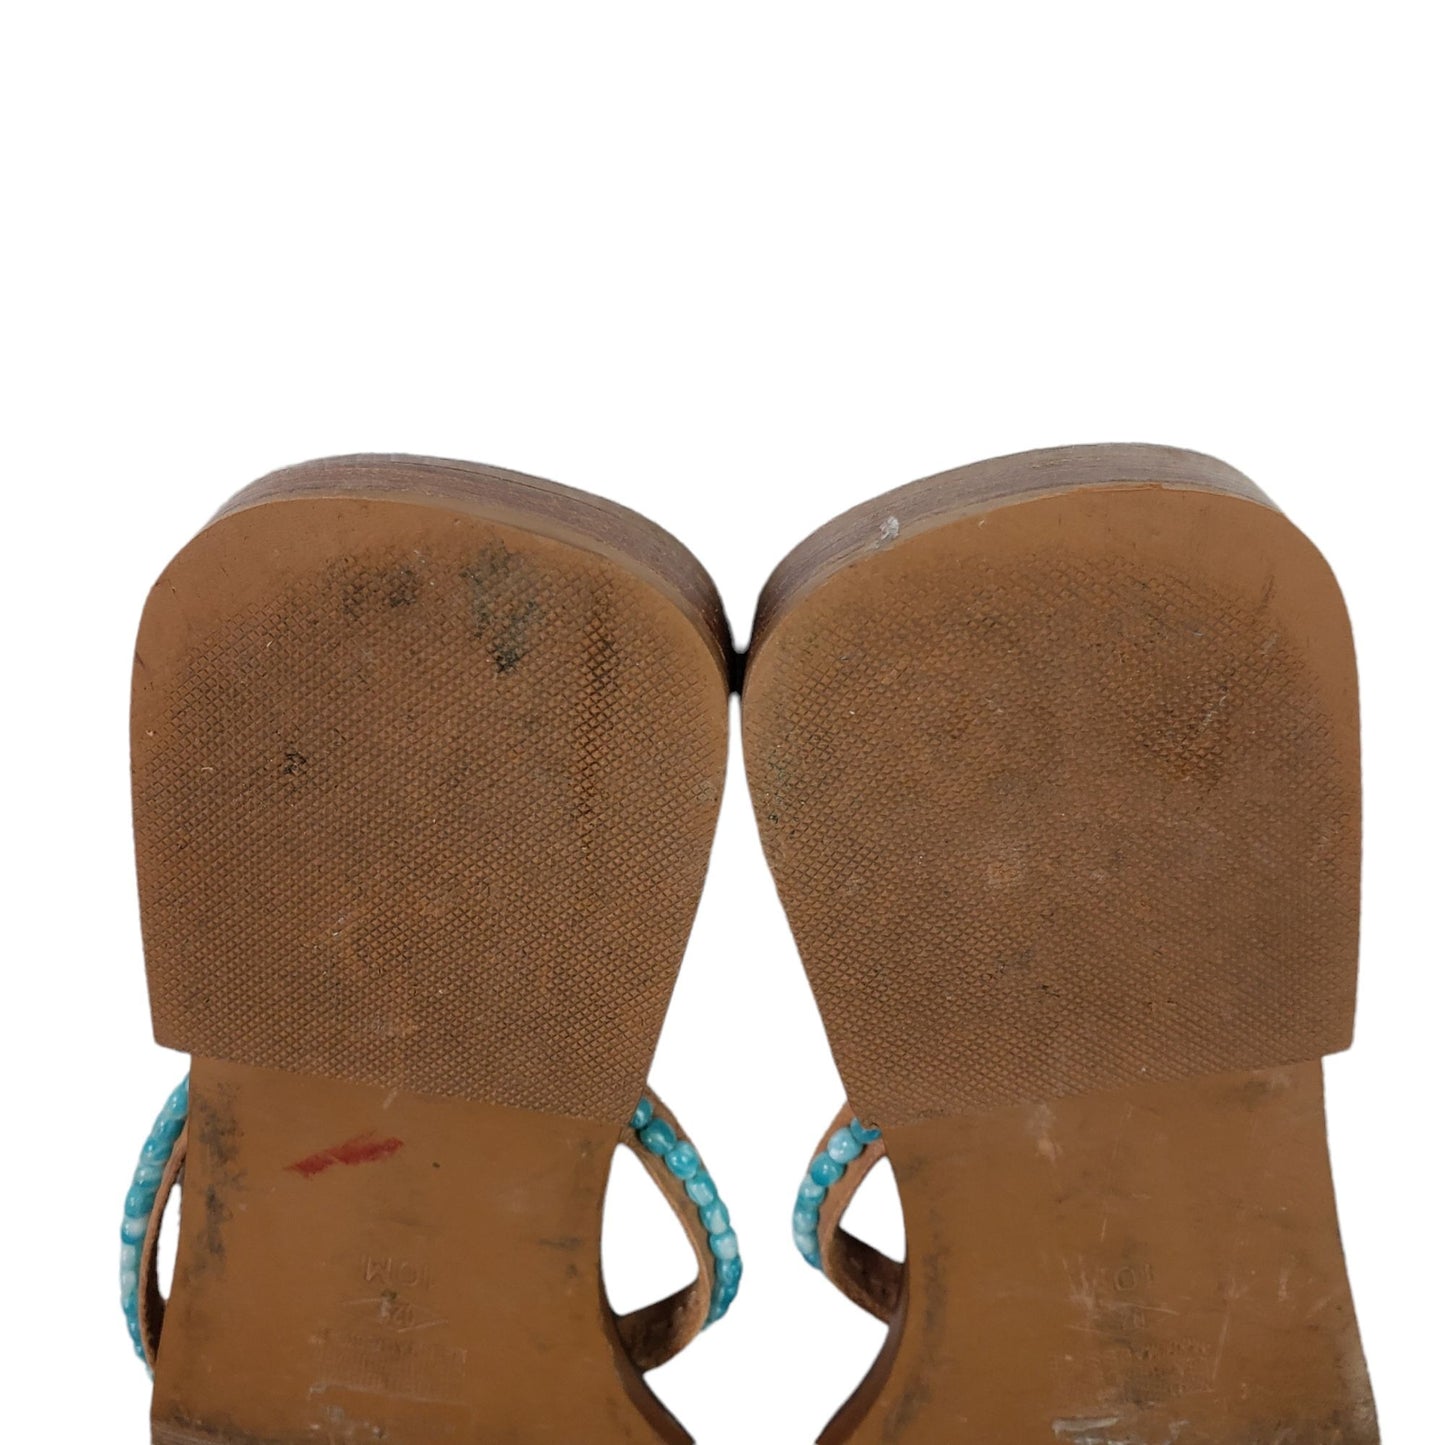 Amanda Smith Caribe Turquoise Beaded Leather Thong Sandals Size 10